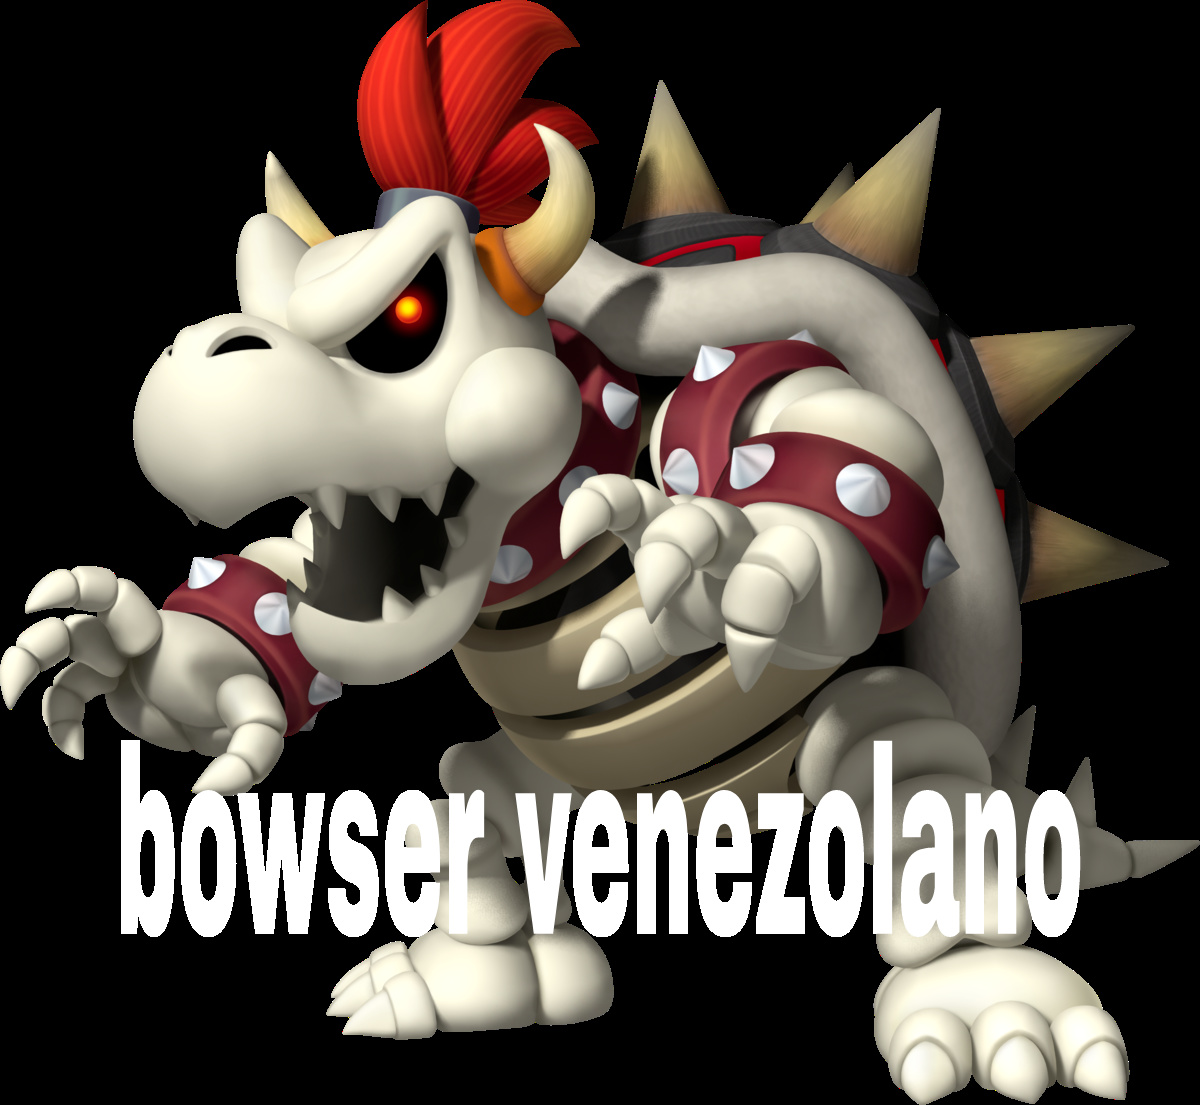 Bowser venezolano - meme